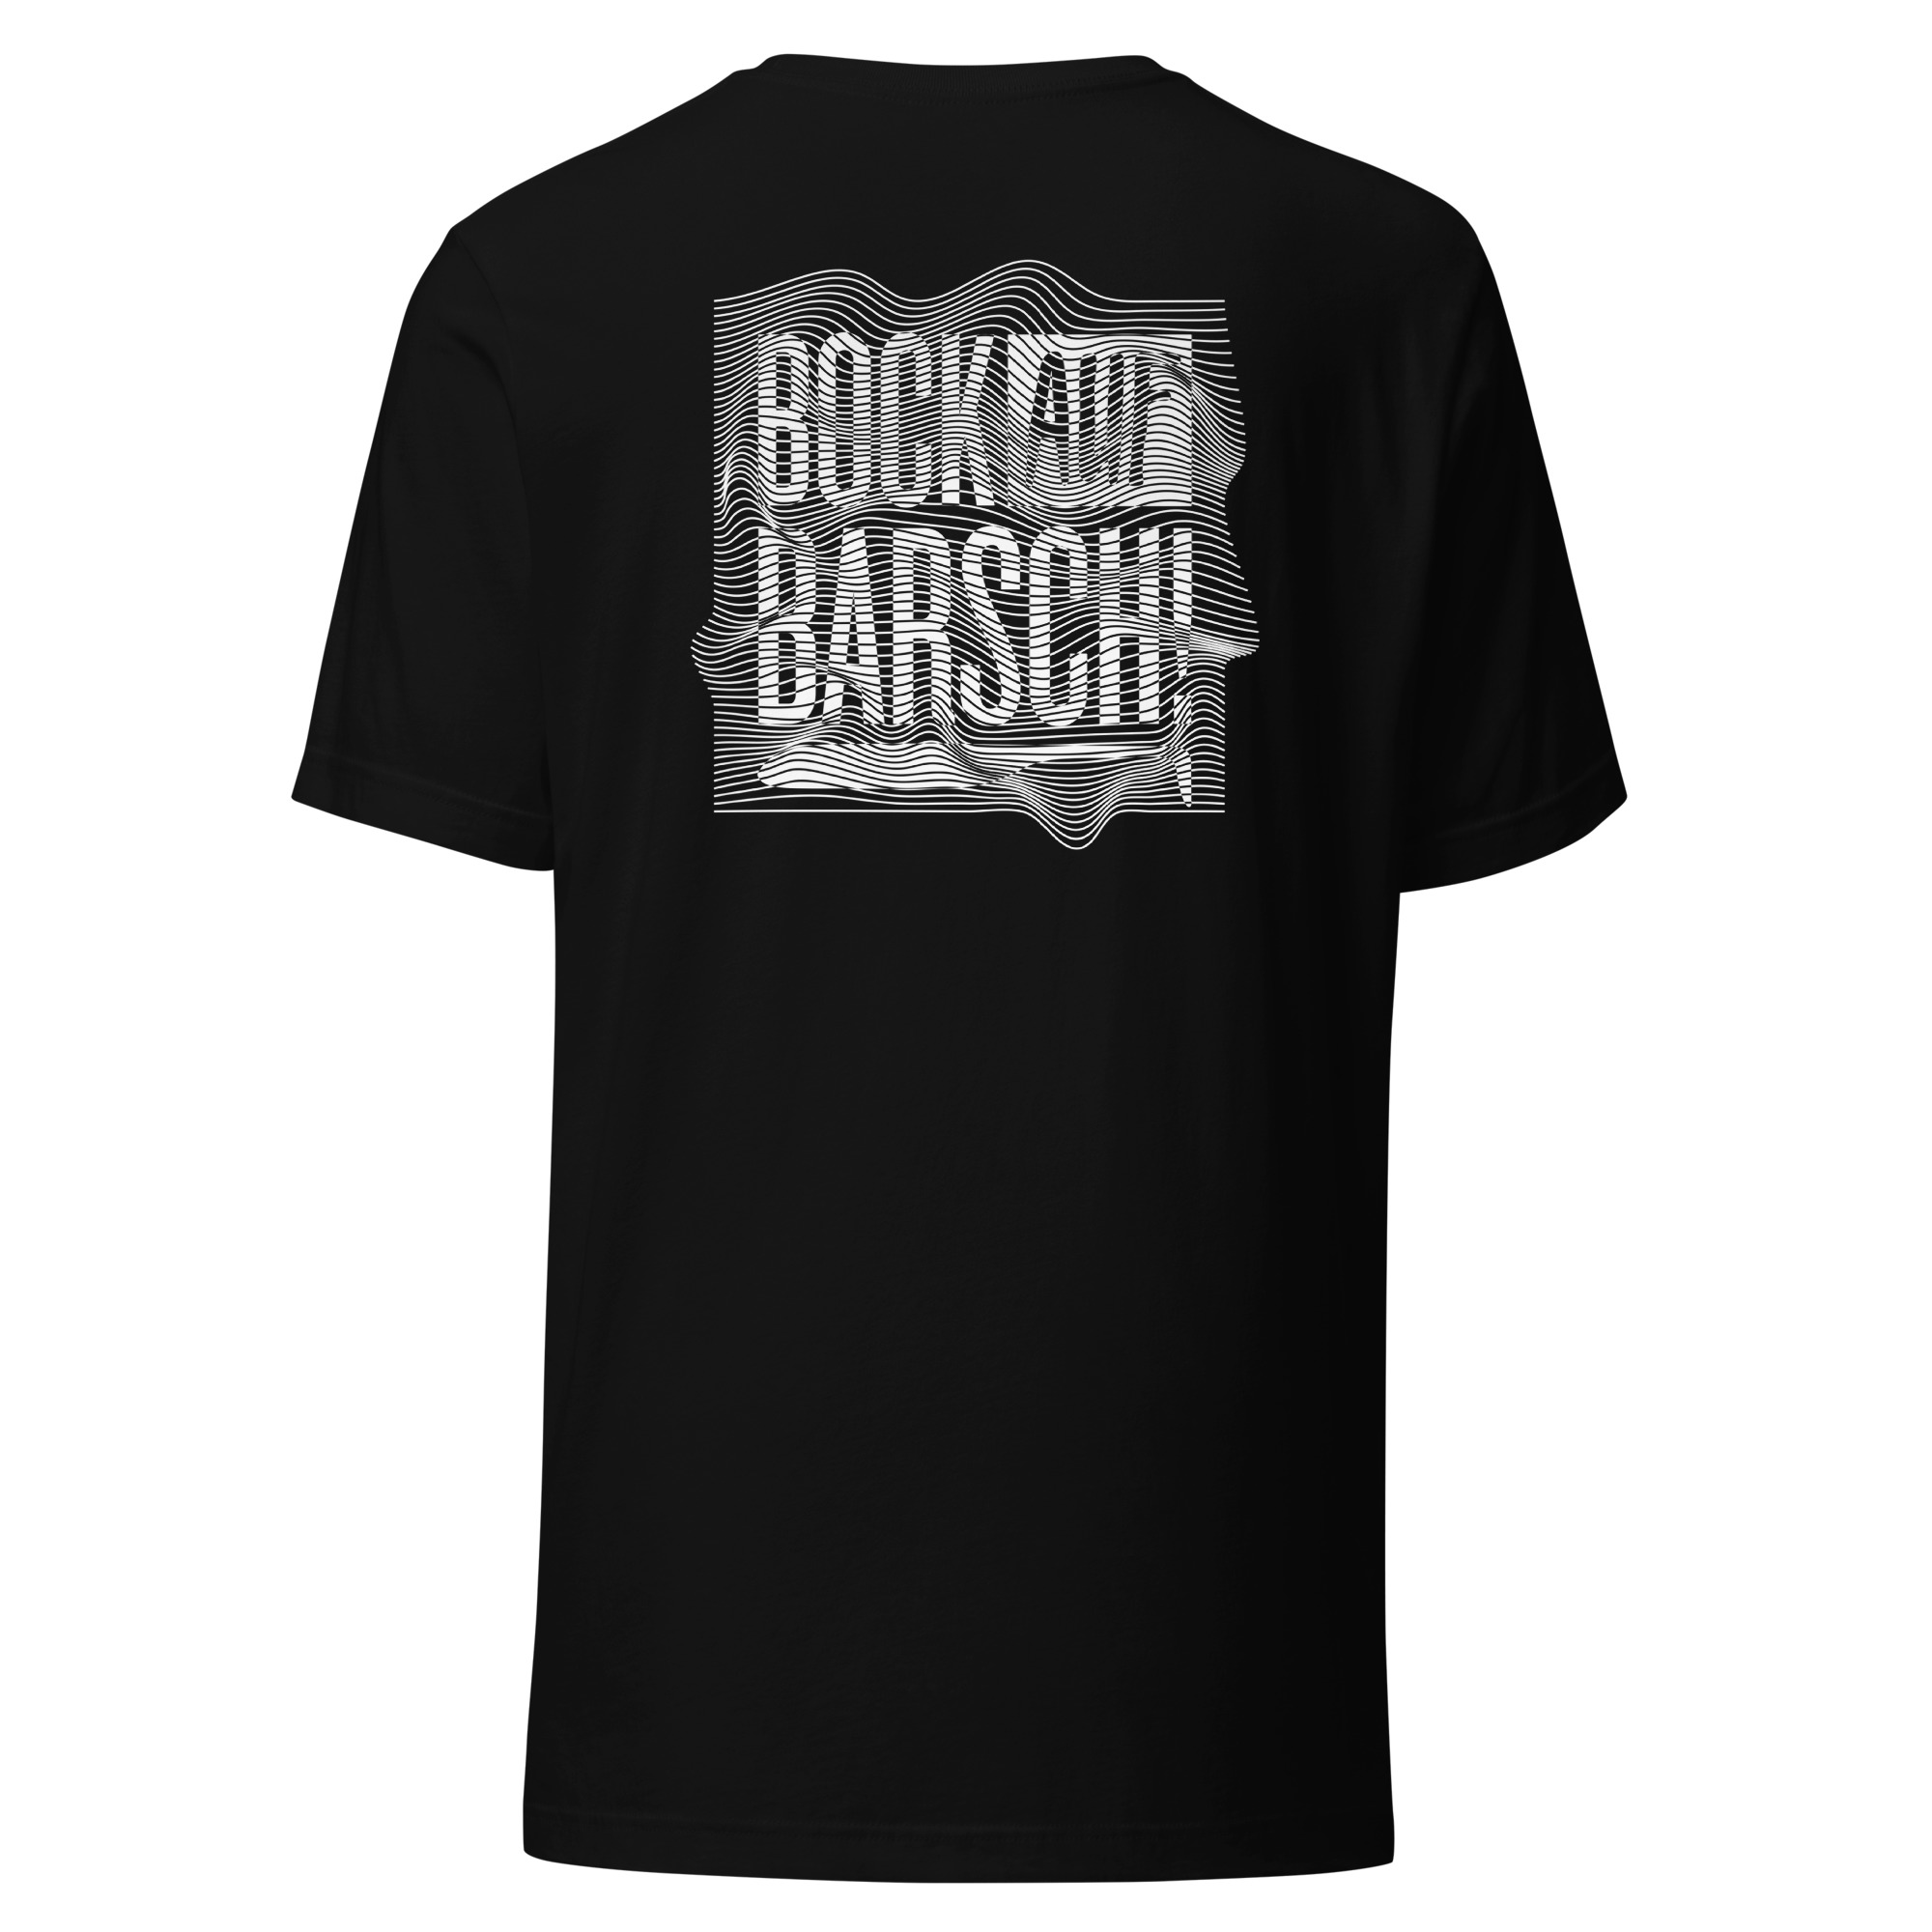 LaBarsch Classic Shirt